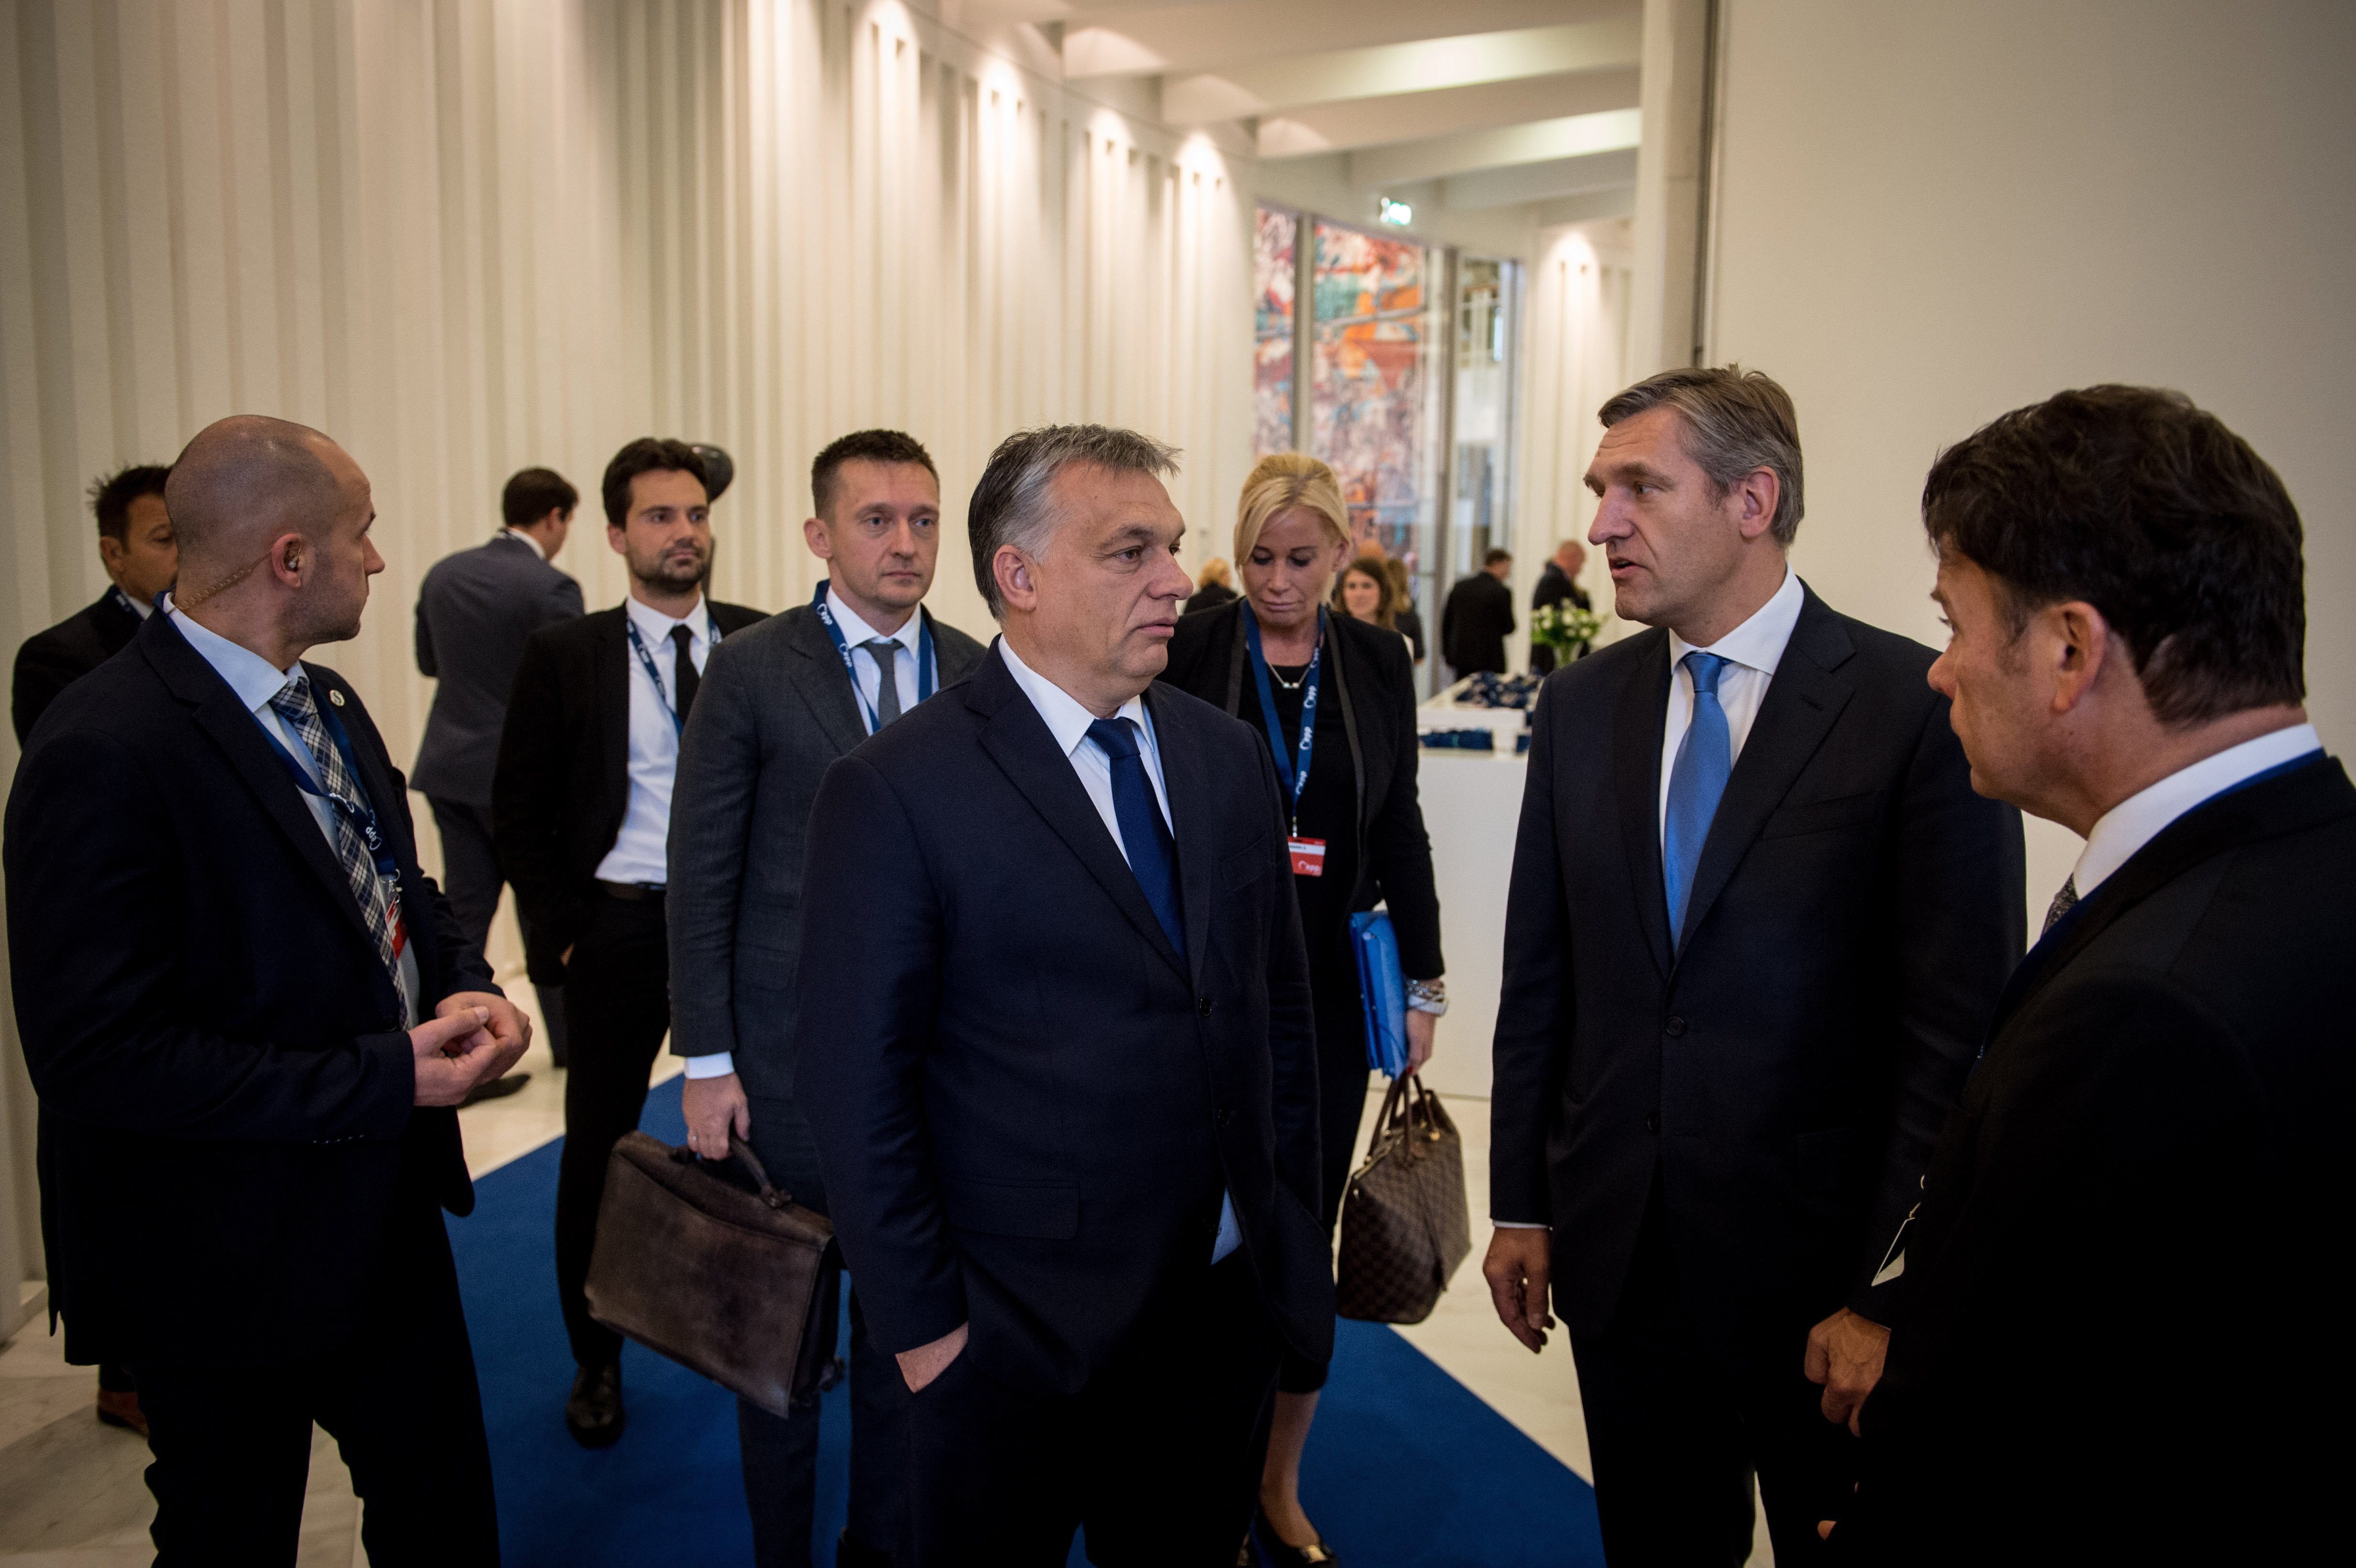 Rogán havi fizetése bruttó 1,3 millió, Orbáné 1,7 millió